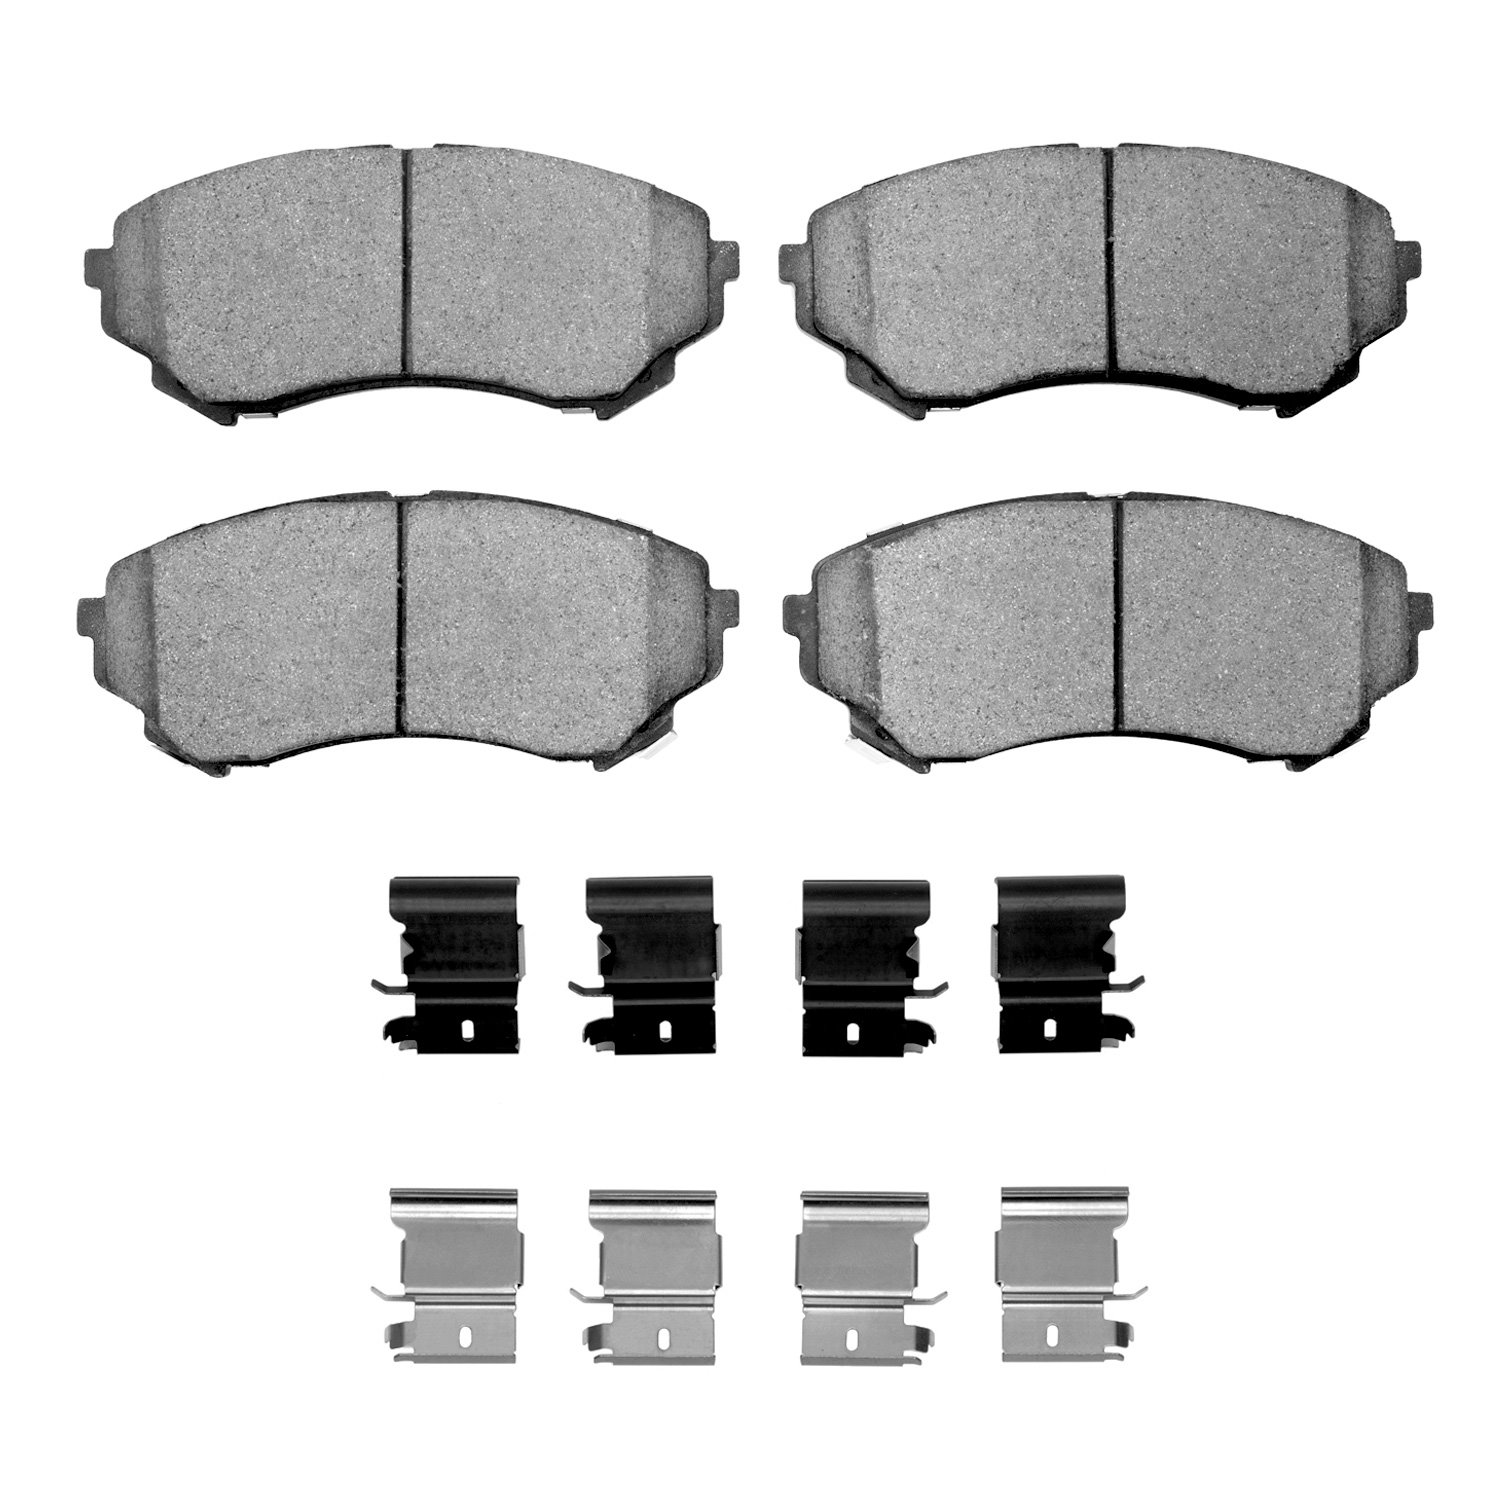 1311-1331-01 3000-Series Semi-Metallic Brake Pads & Hardware Kit, 2008-2014 GM, Position: Front